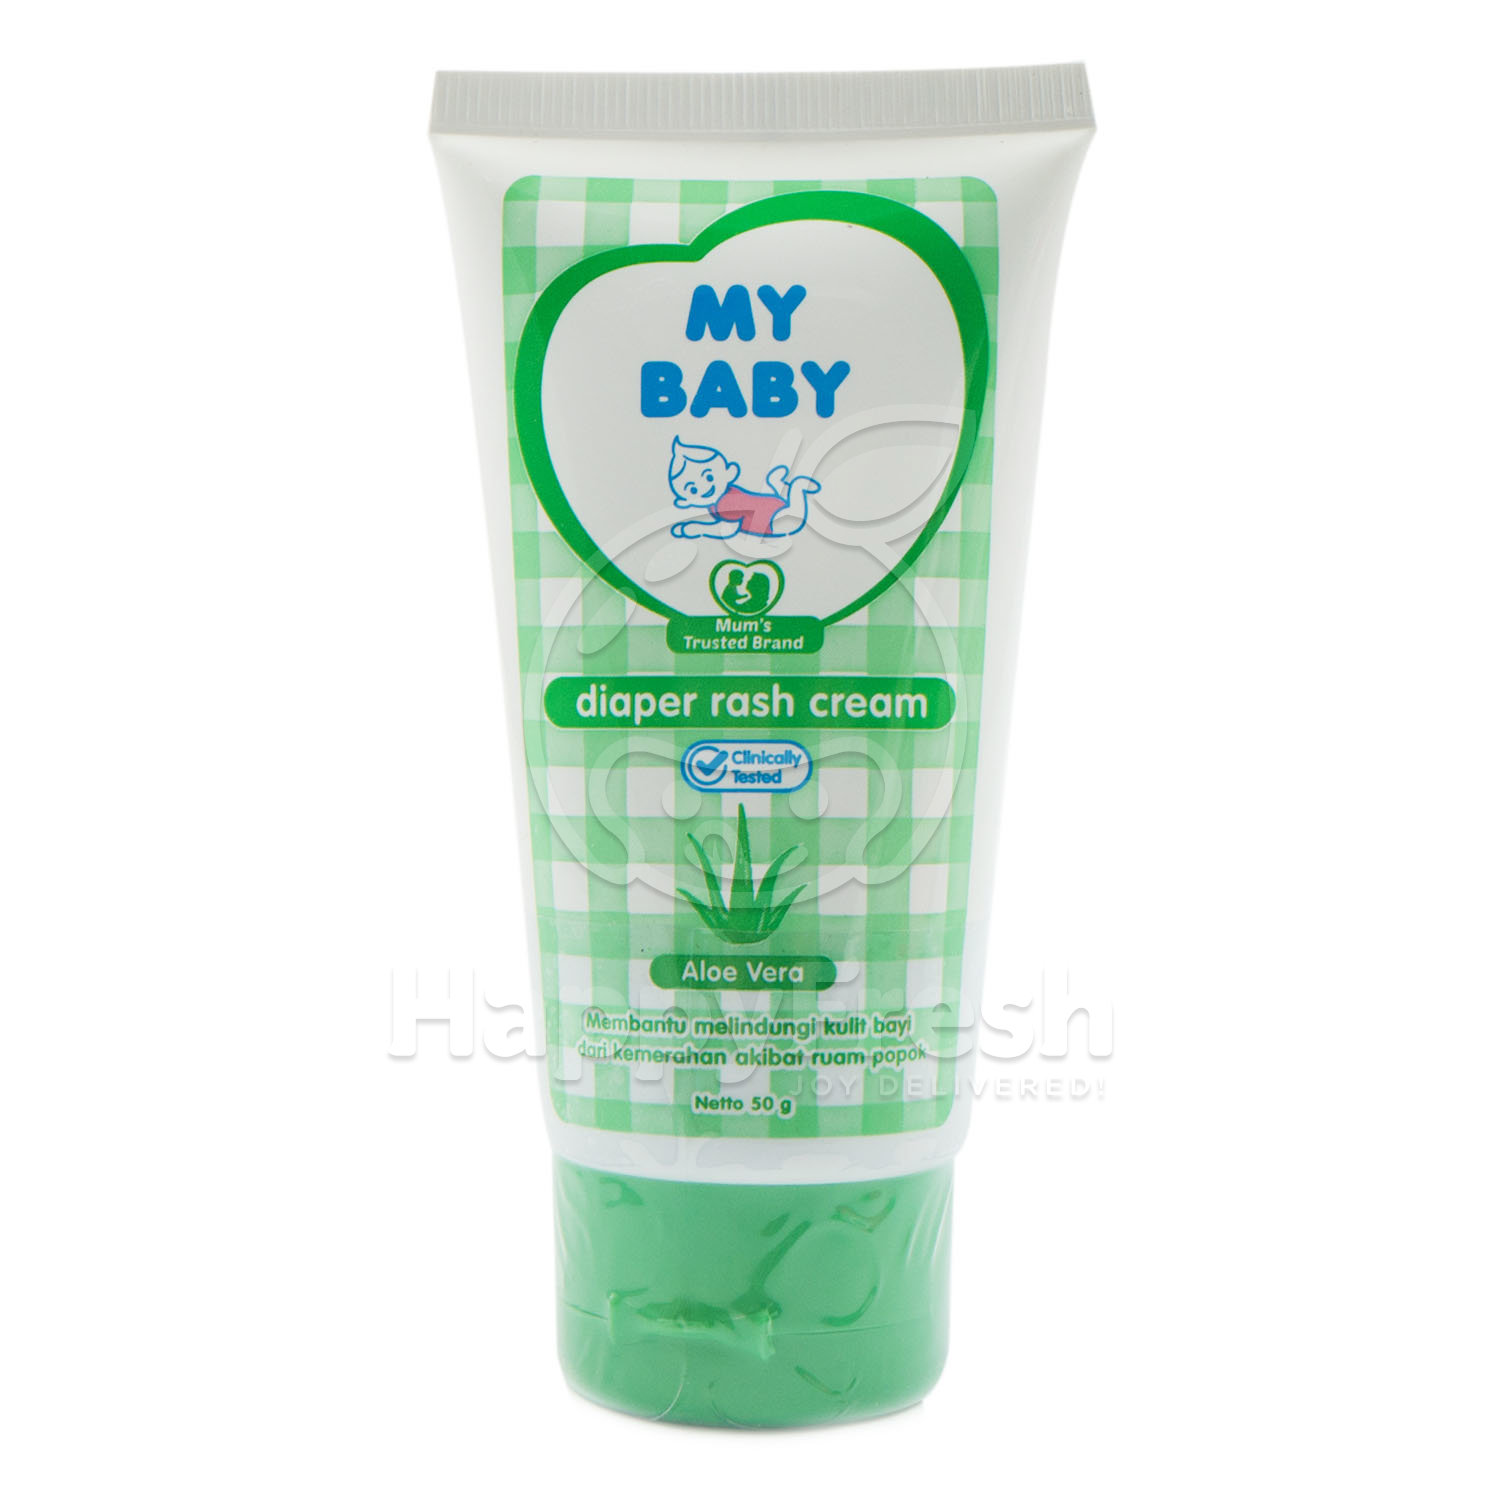 My Baby Diaper Rash Cream Aloe Vera Happyfresh